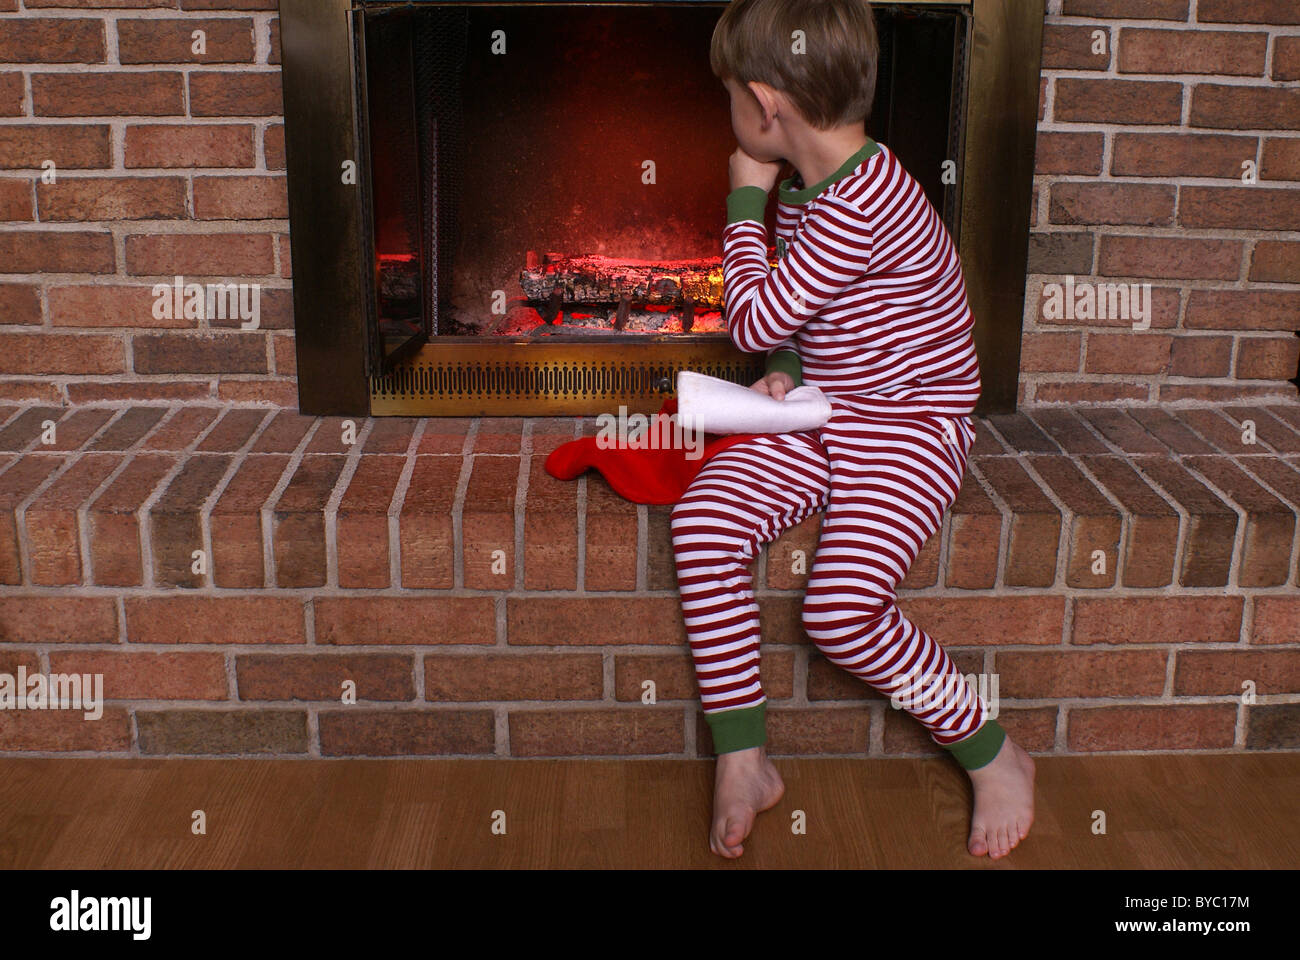 Da seduto e guardando il fuoco nel camino, un ragazzo attende per Santa. Foto Stock